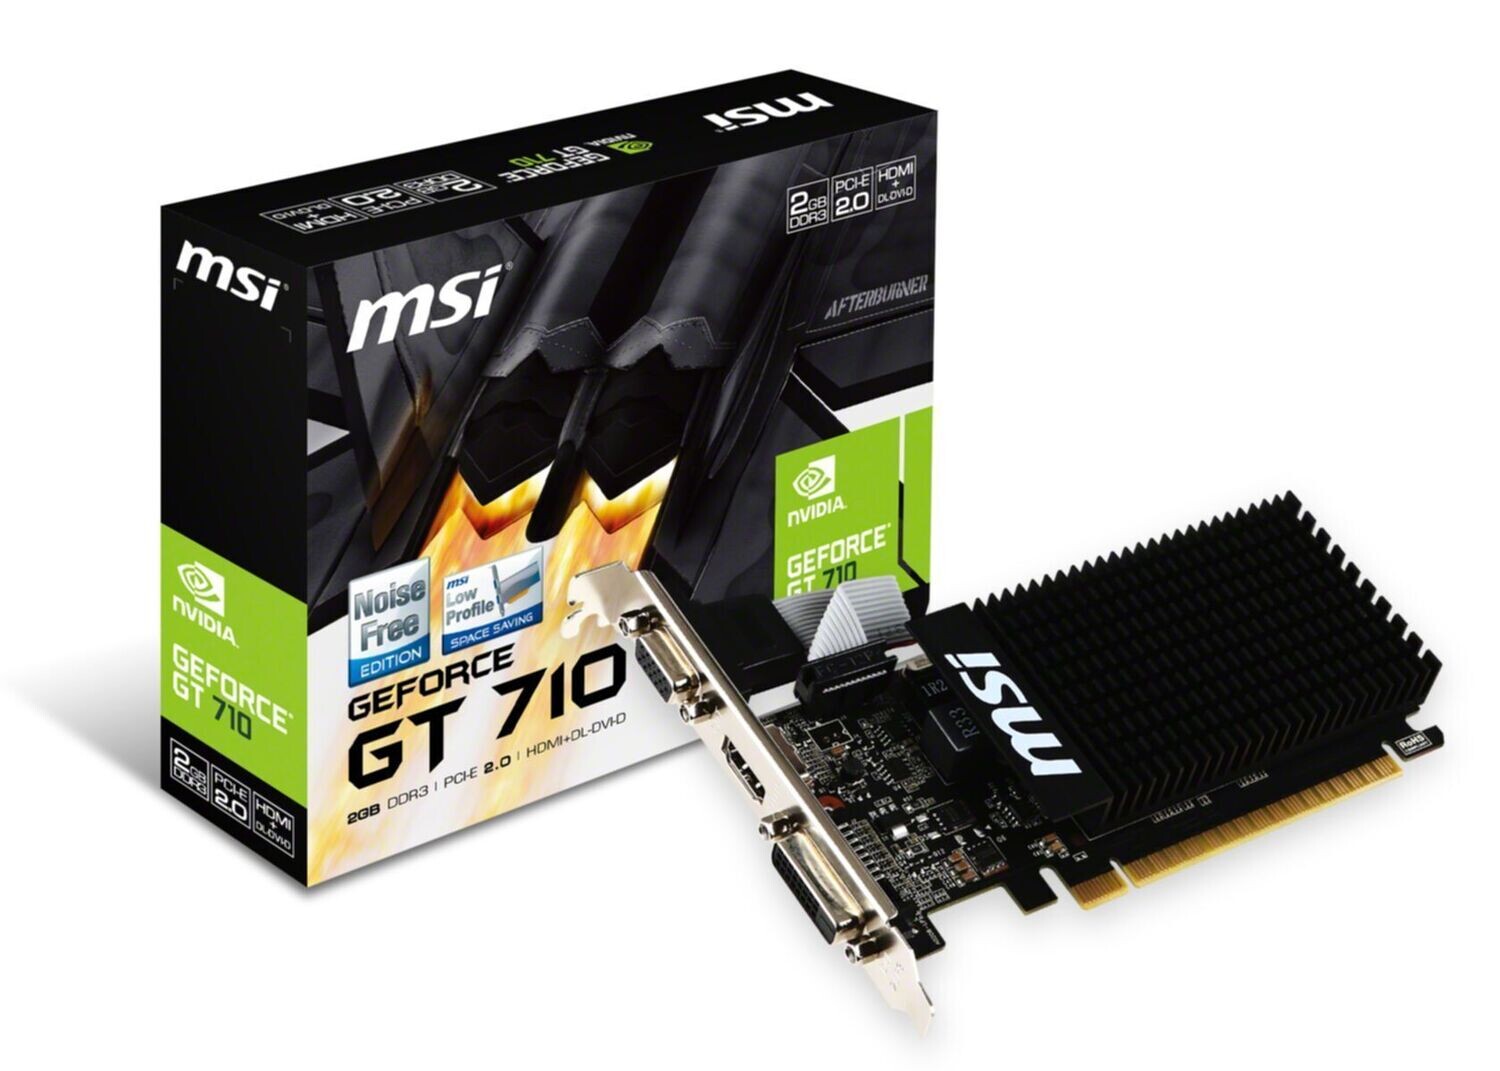 MSI GF GT710 2 GB PCI-E